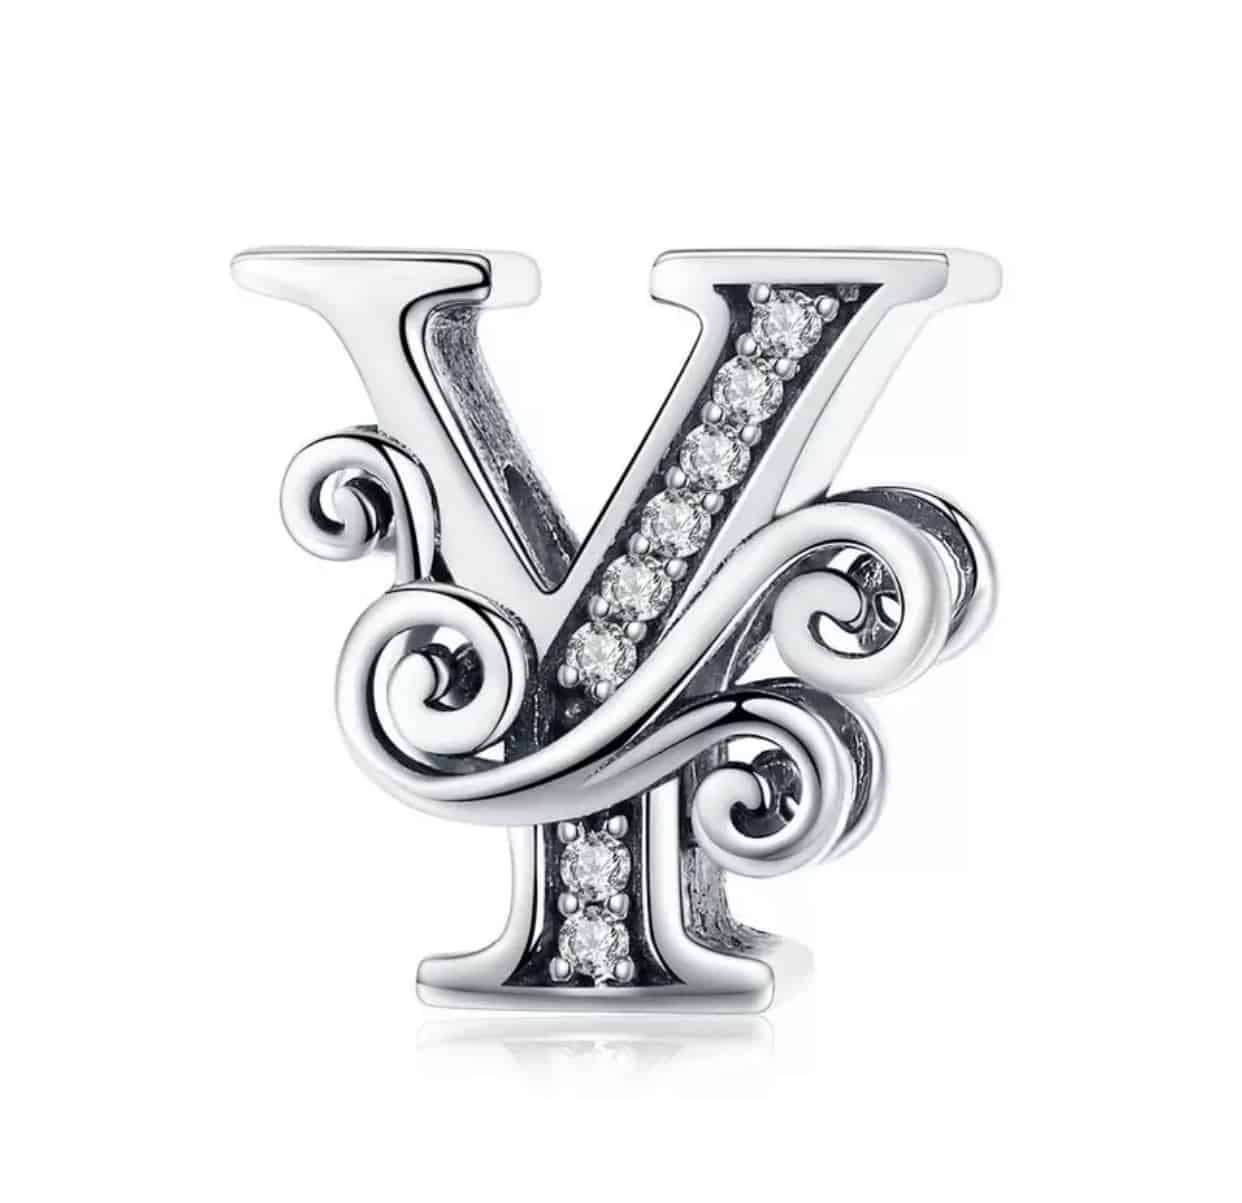 Product Afbeelding Vooraanzicht van onze prachtige sierletter Y. Deze sierlijke bead letter is gemaakt van 925 sterling zilver en ingelegd met zirkonia. Verder is de letter y mooi afgewerkt met sierlijke details.